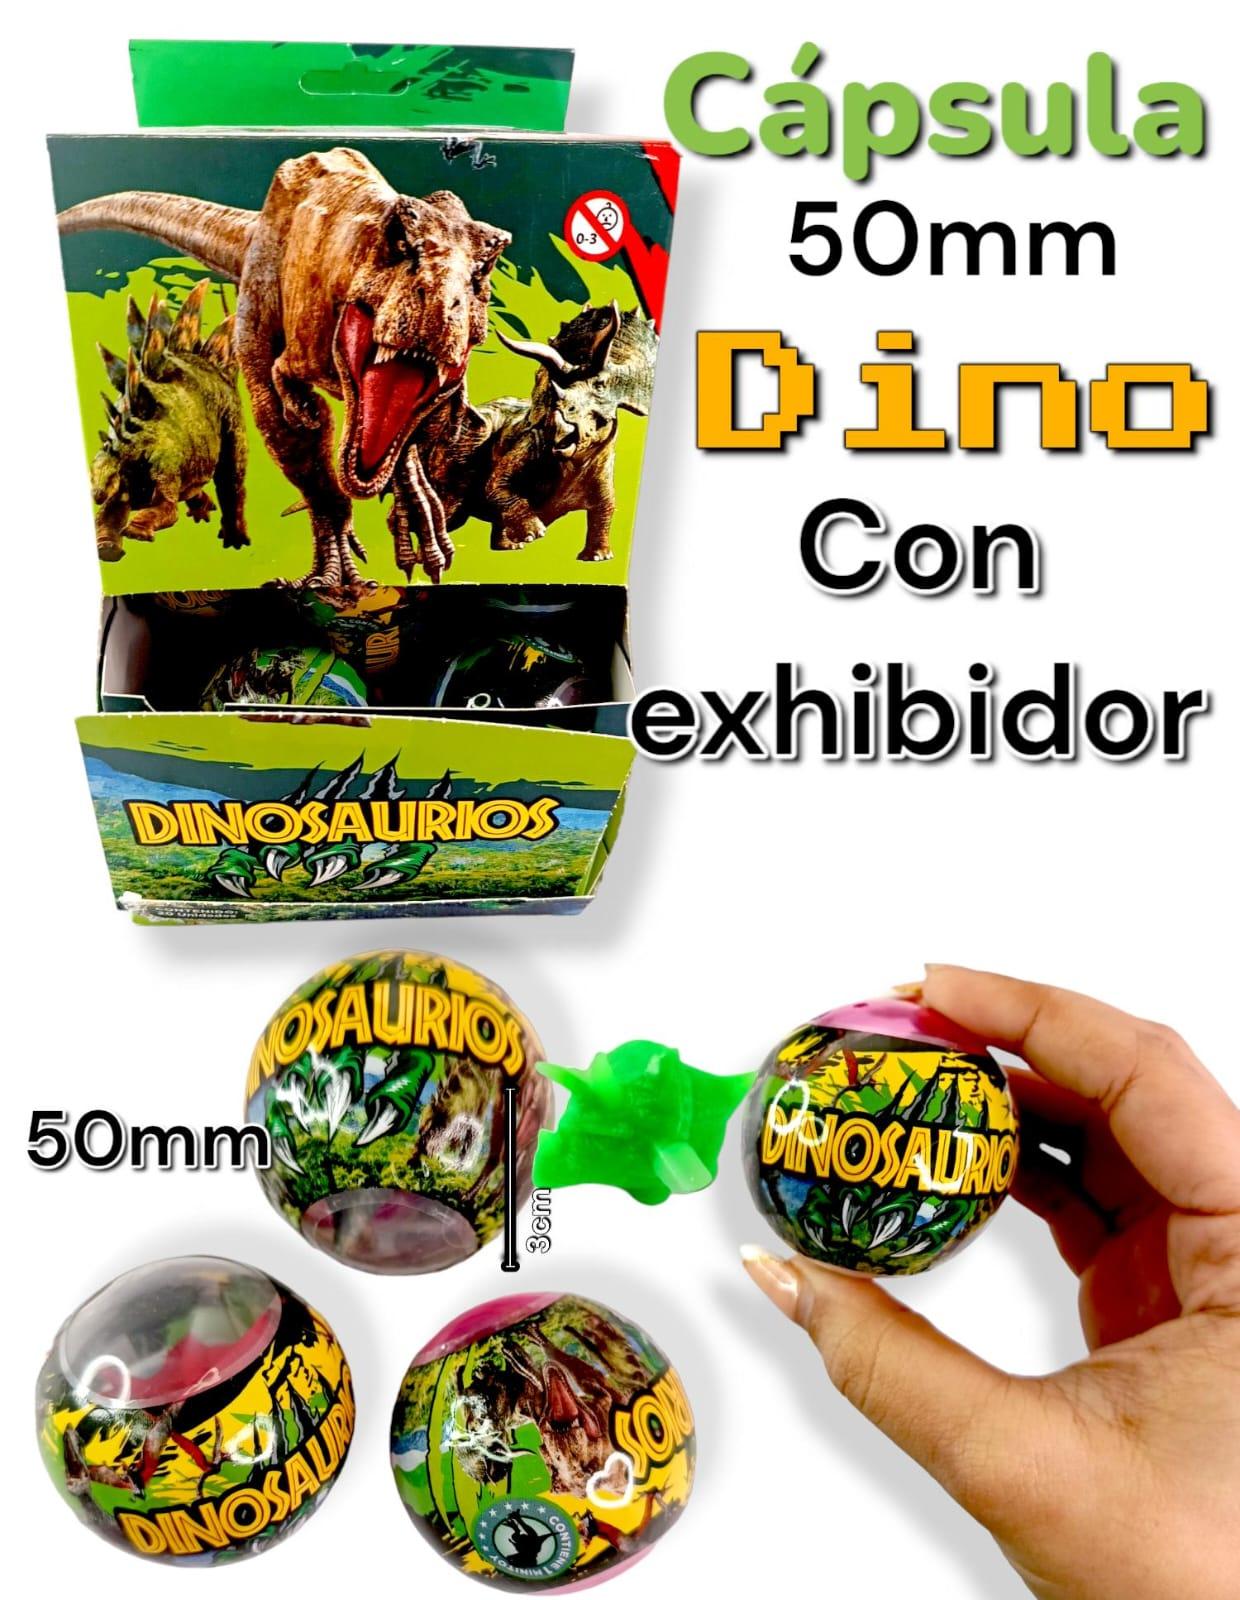 Capsula Dinosaurio 50mm con exhibidor